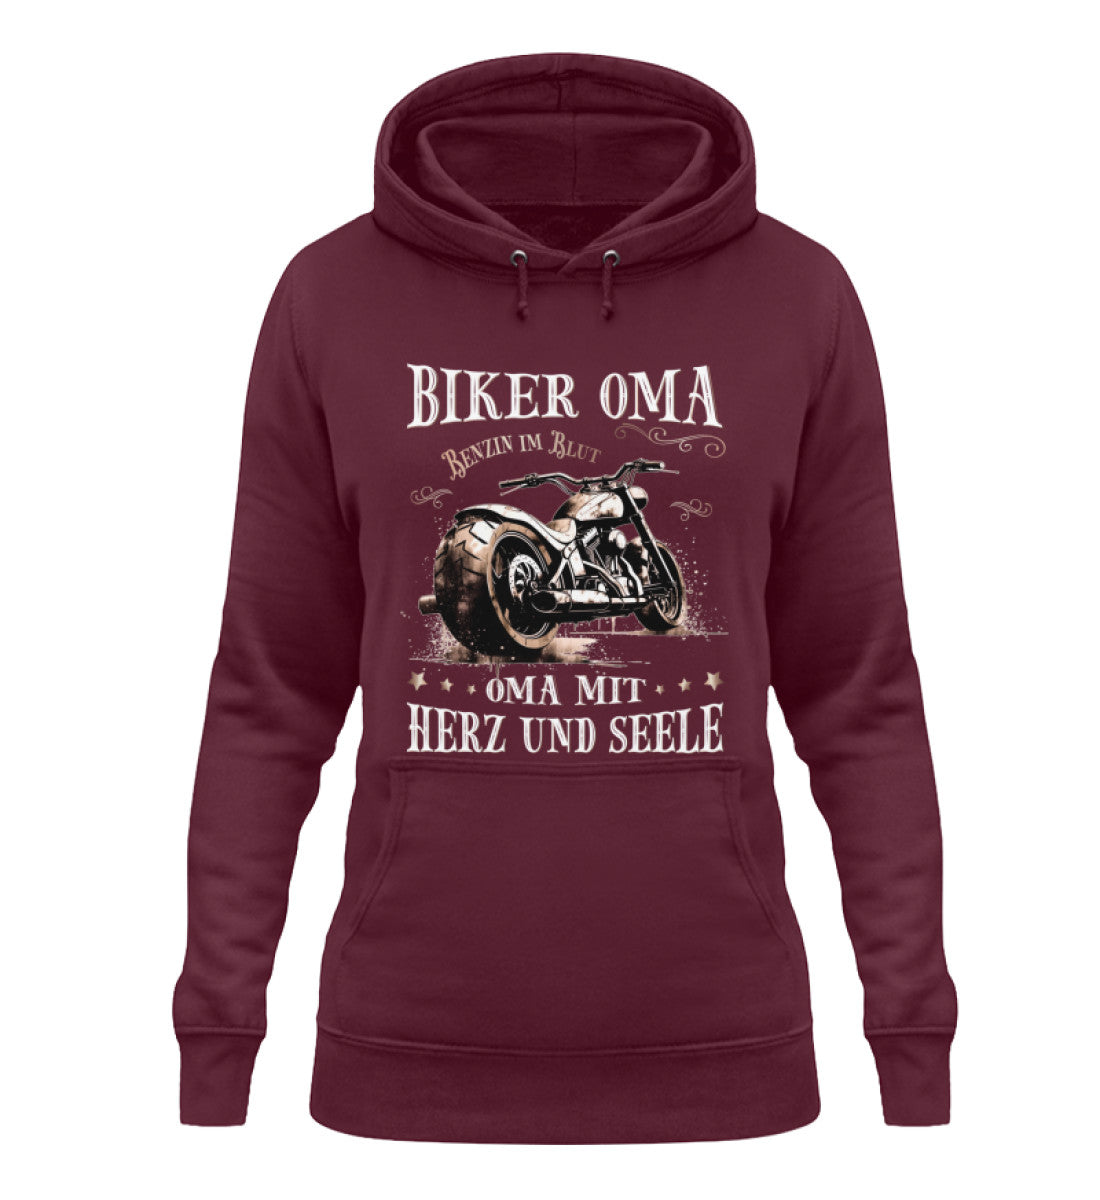 Ein Damen Hoodie für Motorradfahrerinnen von Wingbikers mit dem Aufdruck, Biker Oma - Benzin im Blut - Oma mit Herz und Seele, in burgunder weinrot.